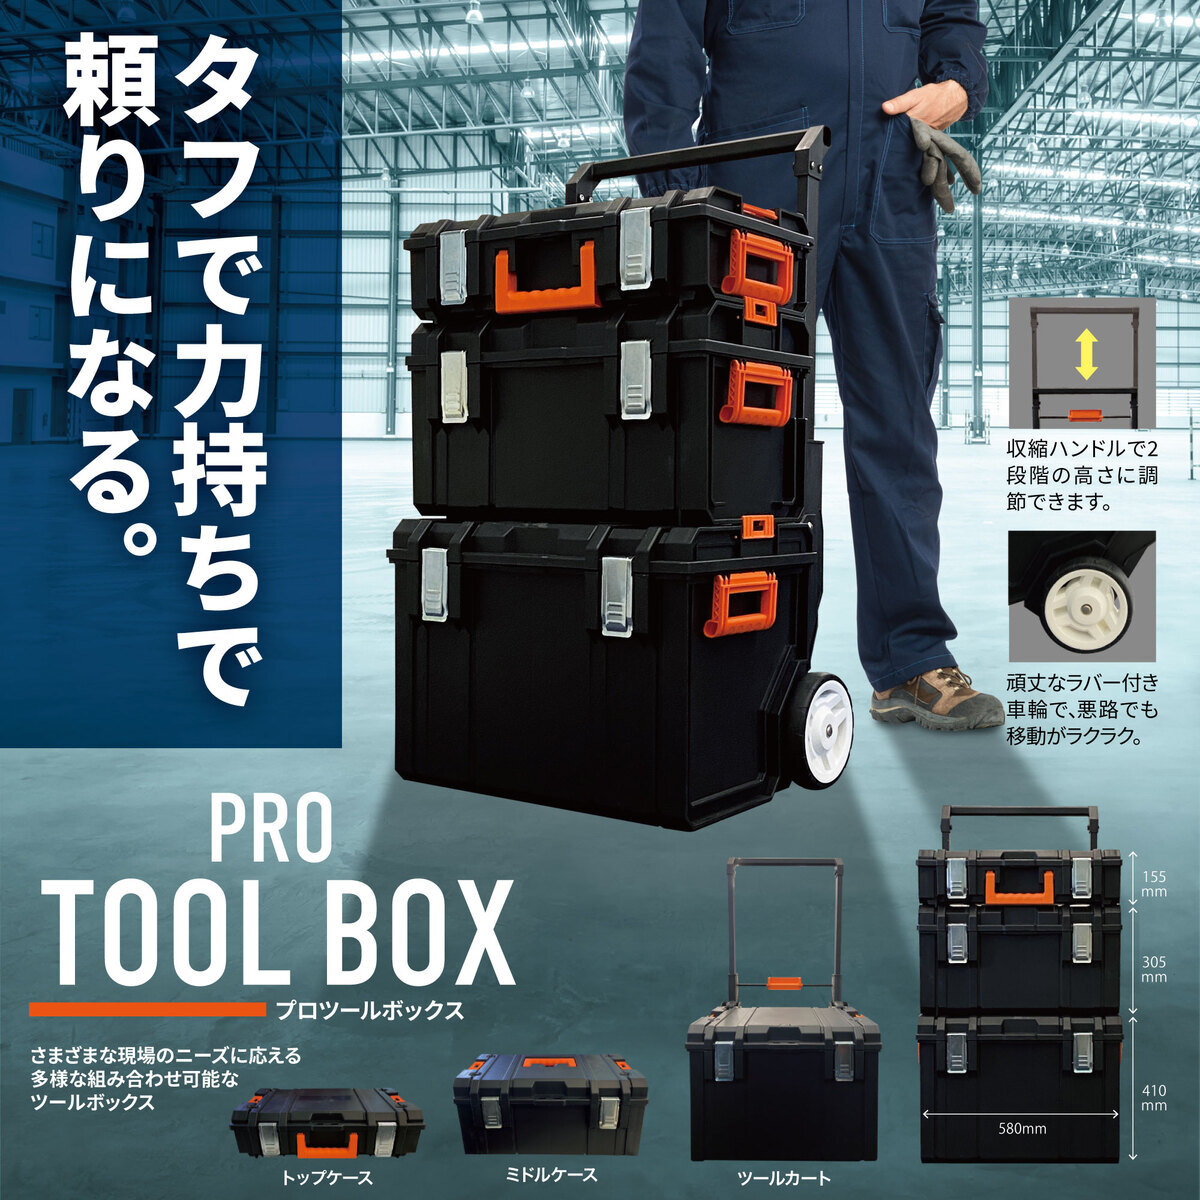 キーネット プロツールボックス 3セット キャスター付き G-209012A Costco Japan